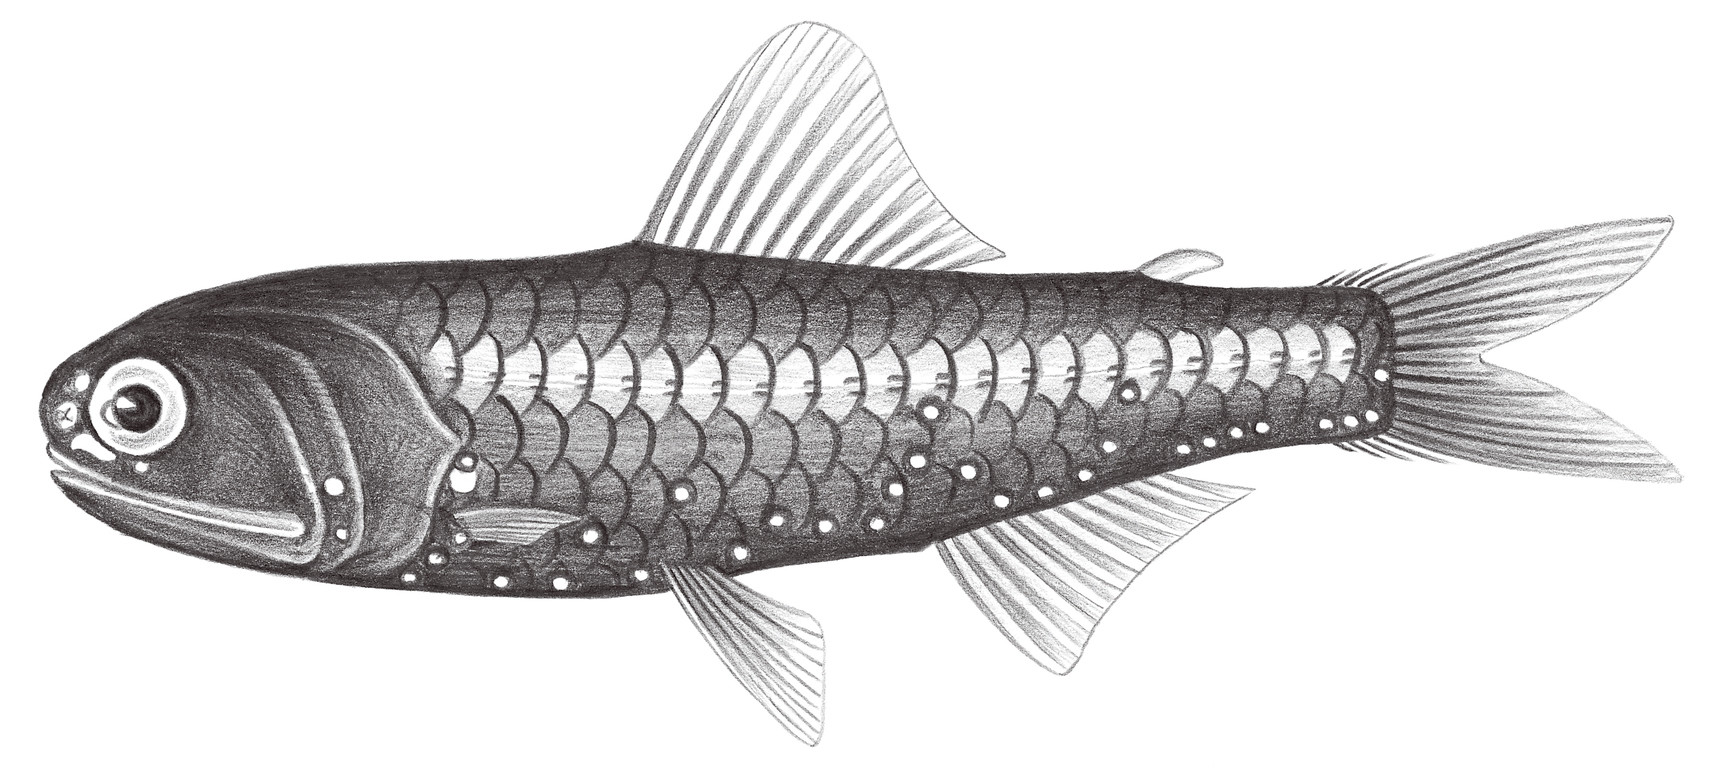 505.	黑潮眶燈魚 Diaphus kuroshio Kawaguchi & Nafpaktitis, 1978